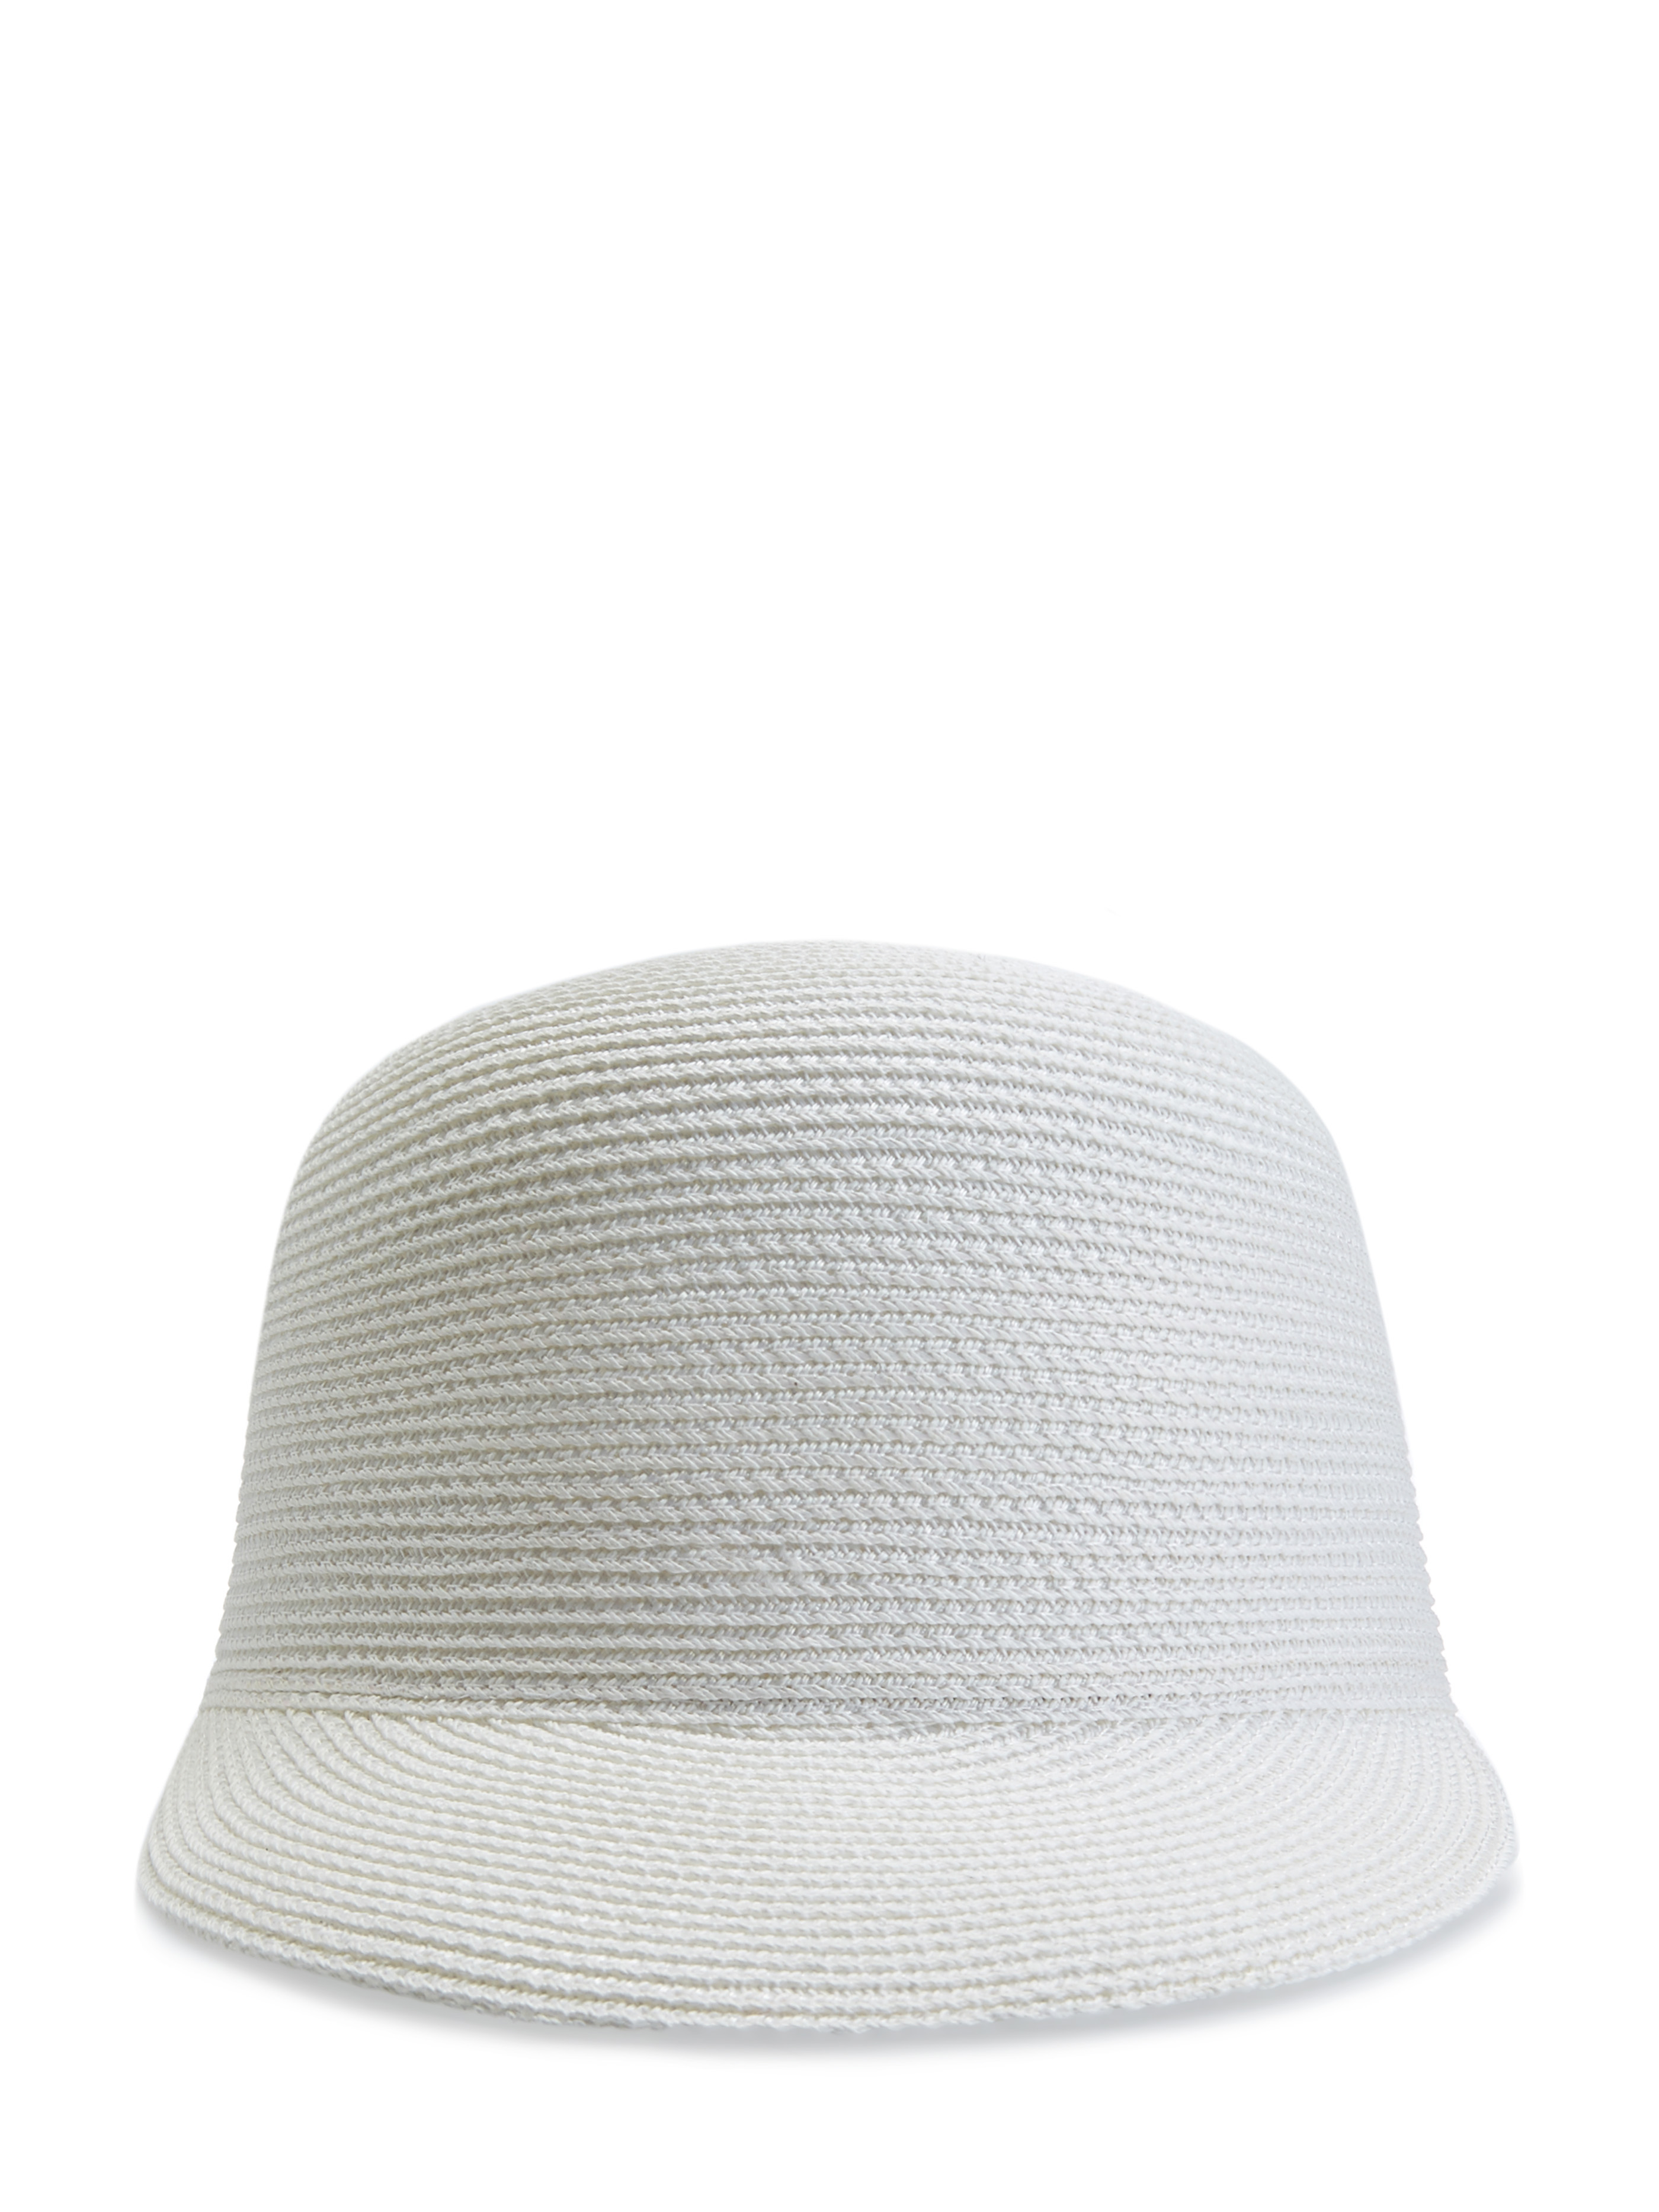 Плетеная шляпа в стиле бейсболки с кристаллами Swarovski® LORENA ANTONIAZZI, цвет белый, размер M;L